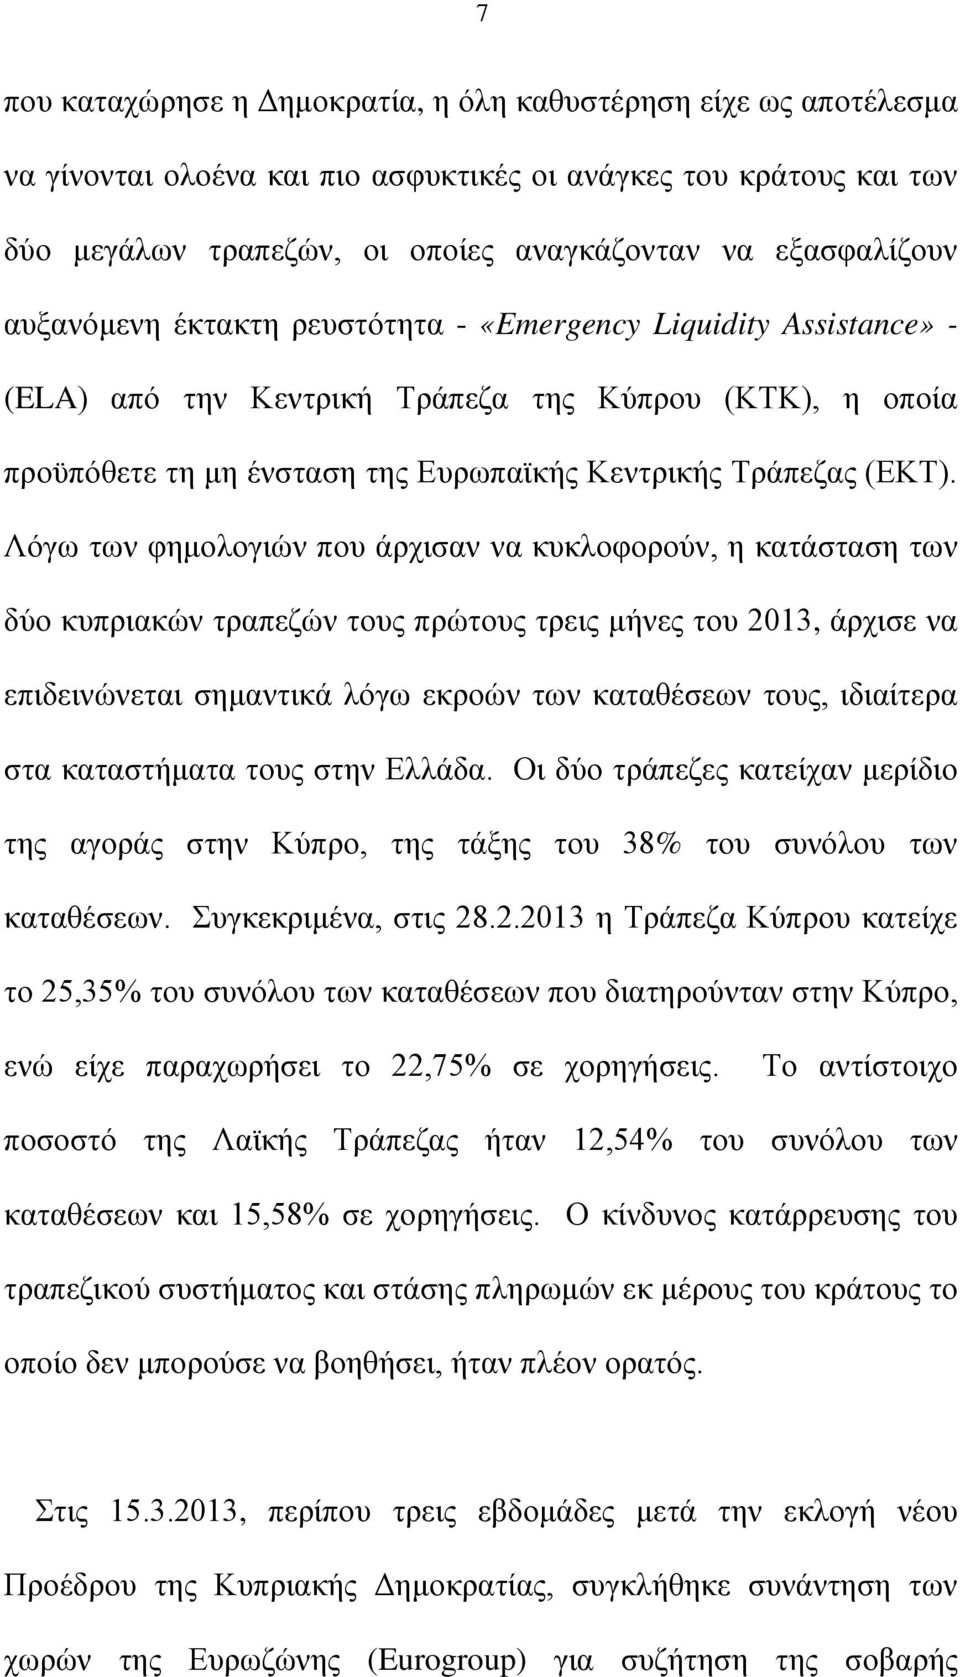 Λόγω των φημολογιών που άρχισαν να κυκλοφορούν, η κατάσταση των δύο κυπριακών τραπεζών τους πρώτους τρεις μήνες του 2013, άρχισε να επιδεινώνεται σημαντικά λόγω εκροών των καταθέσεων τους, ιδιαίτερα